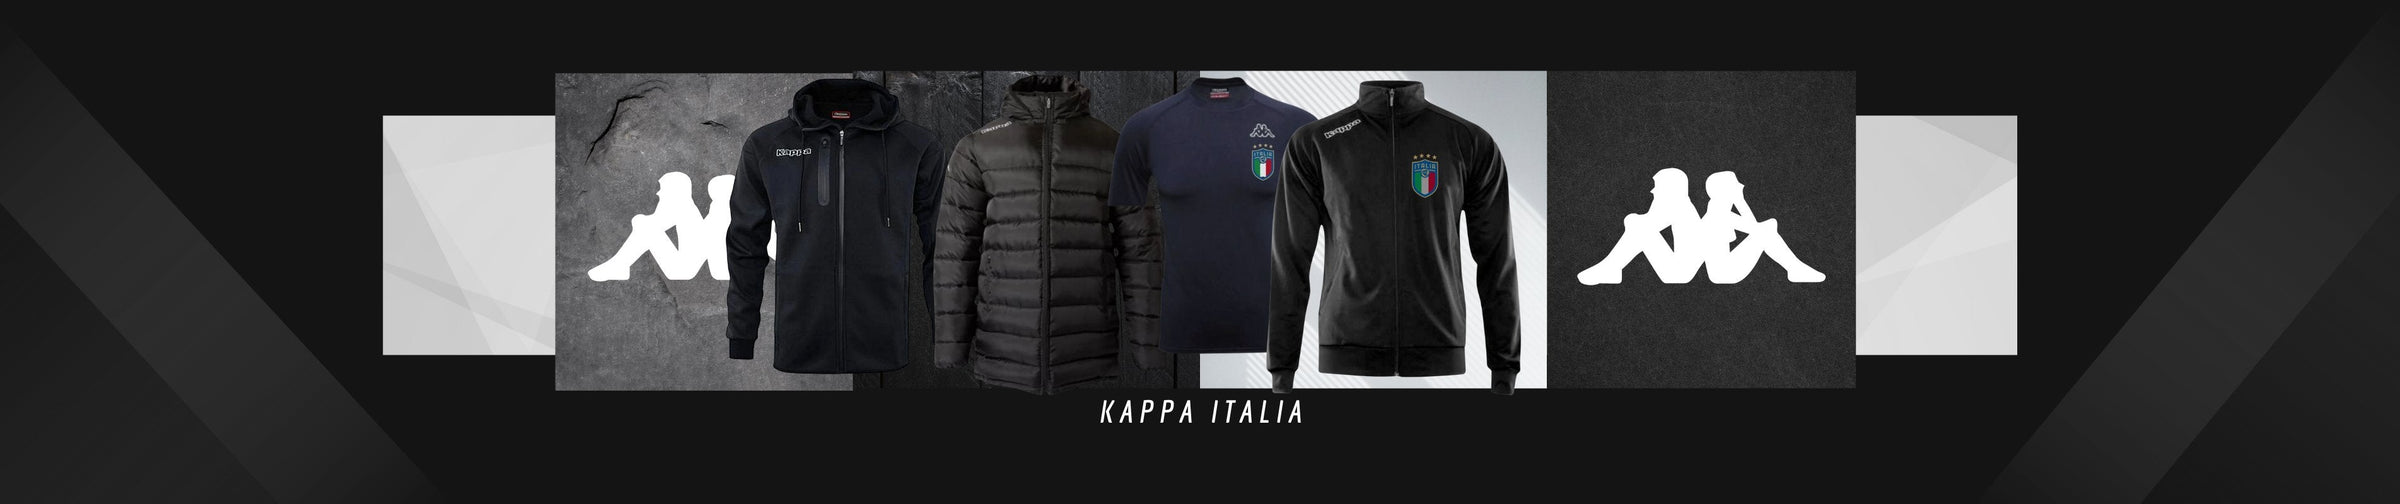 Kappa Sydney Kappa Italy | ITASPORT